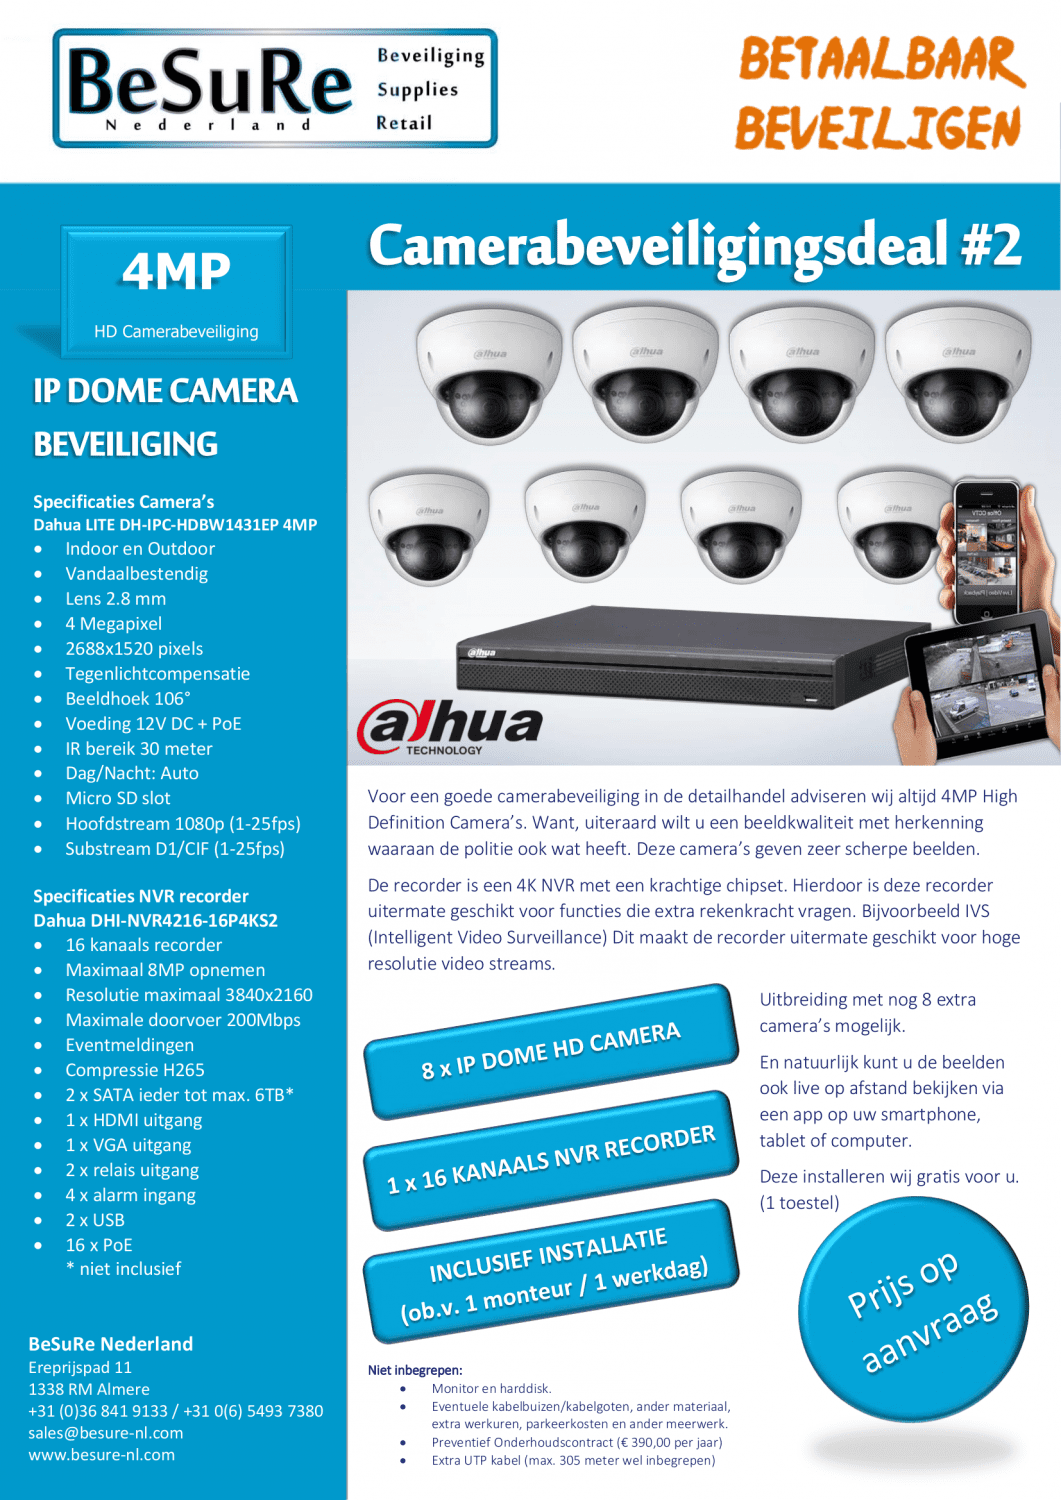 Camerabeveiliging - Camerabewaking - winkelbeveiliging - productbeveiliging - camera - veiligheid - security - cctv